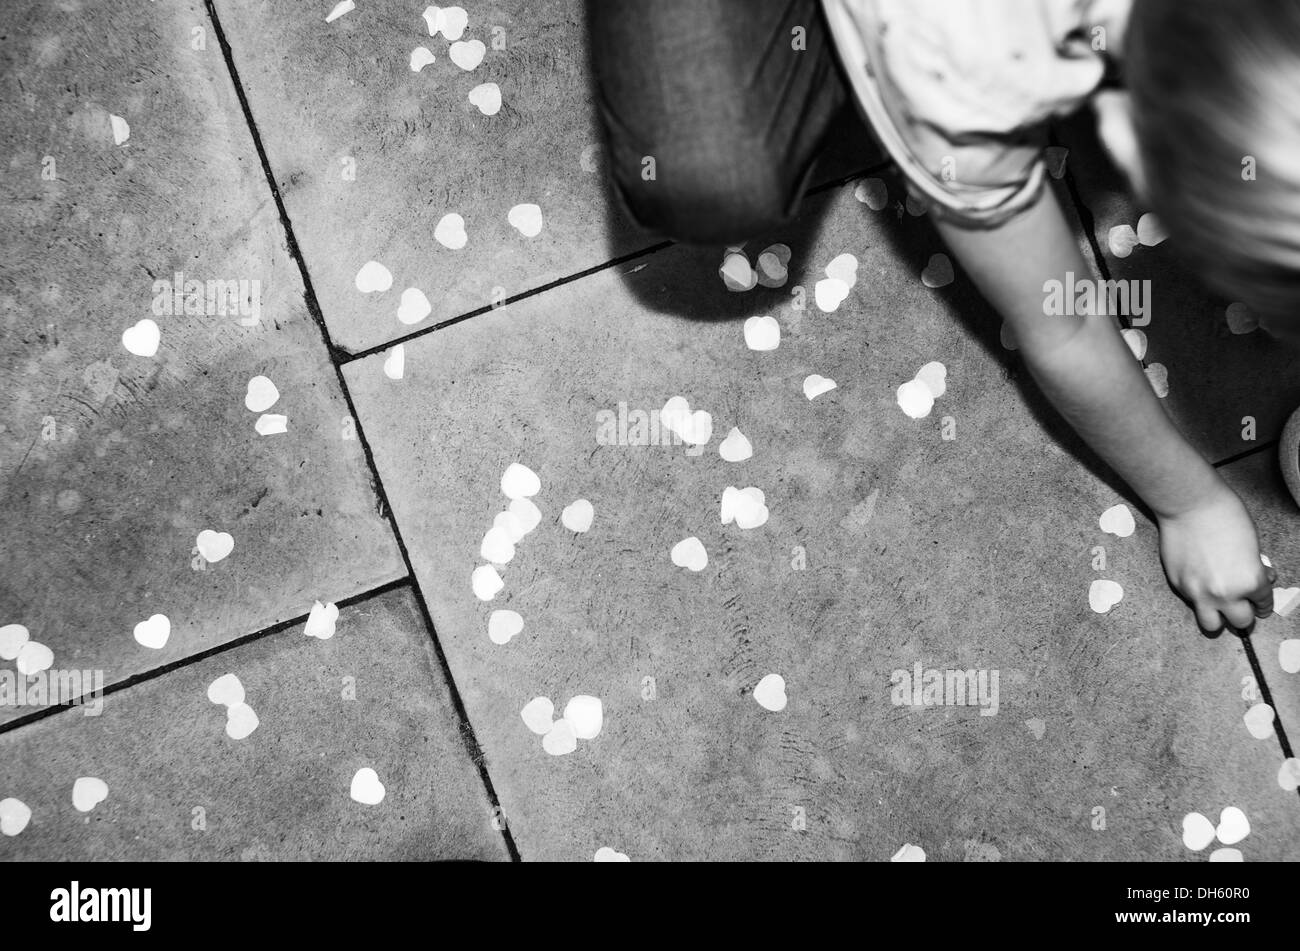 Das Kind holt Konfetti für den Hochzeitsempfang vom gepflasterten Boden ab Stockfoto